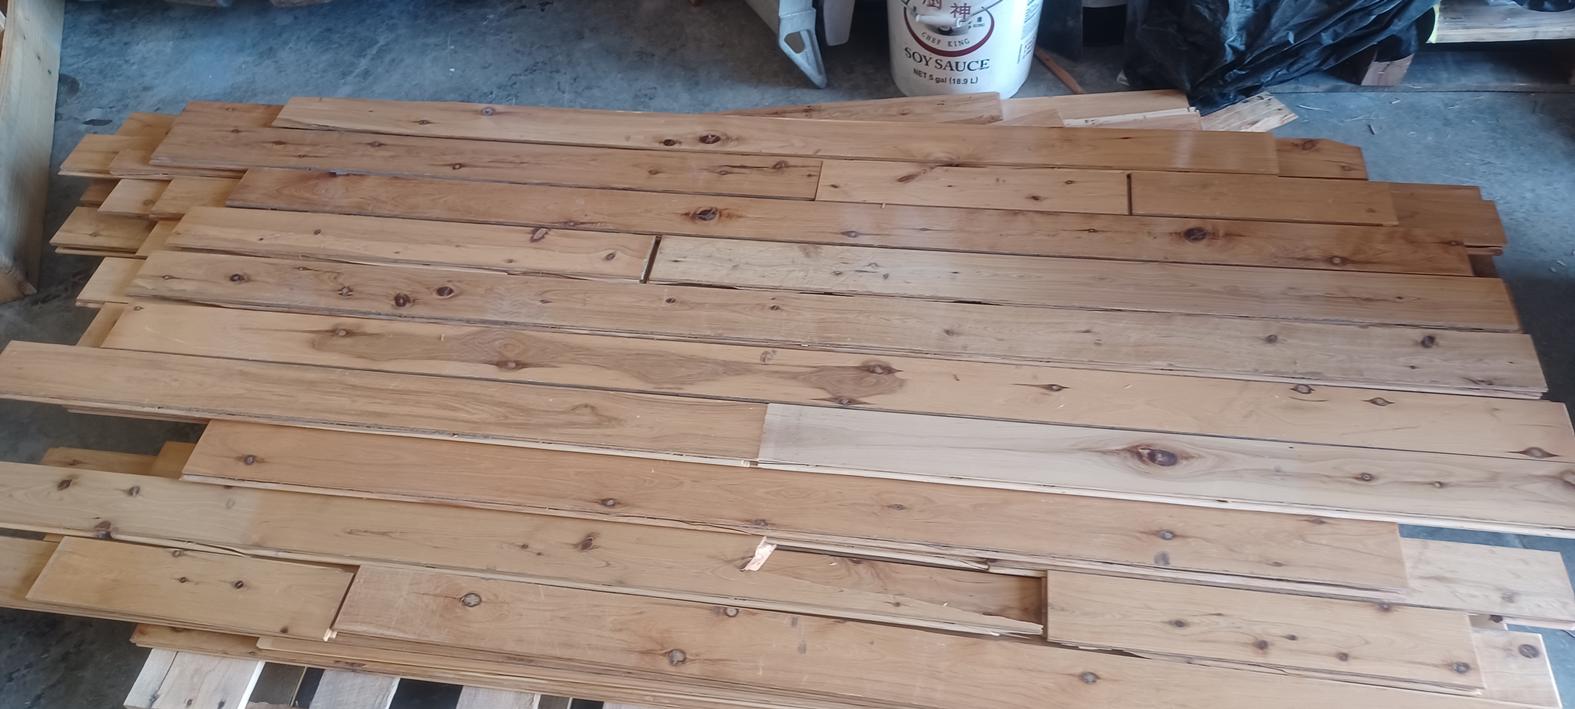 3-1/4 x 3/4 Reclaimed Prefinished Hickory Hardwood Flooring